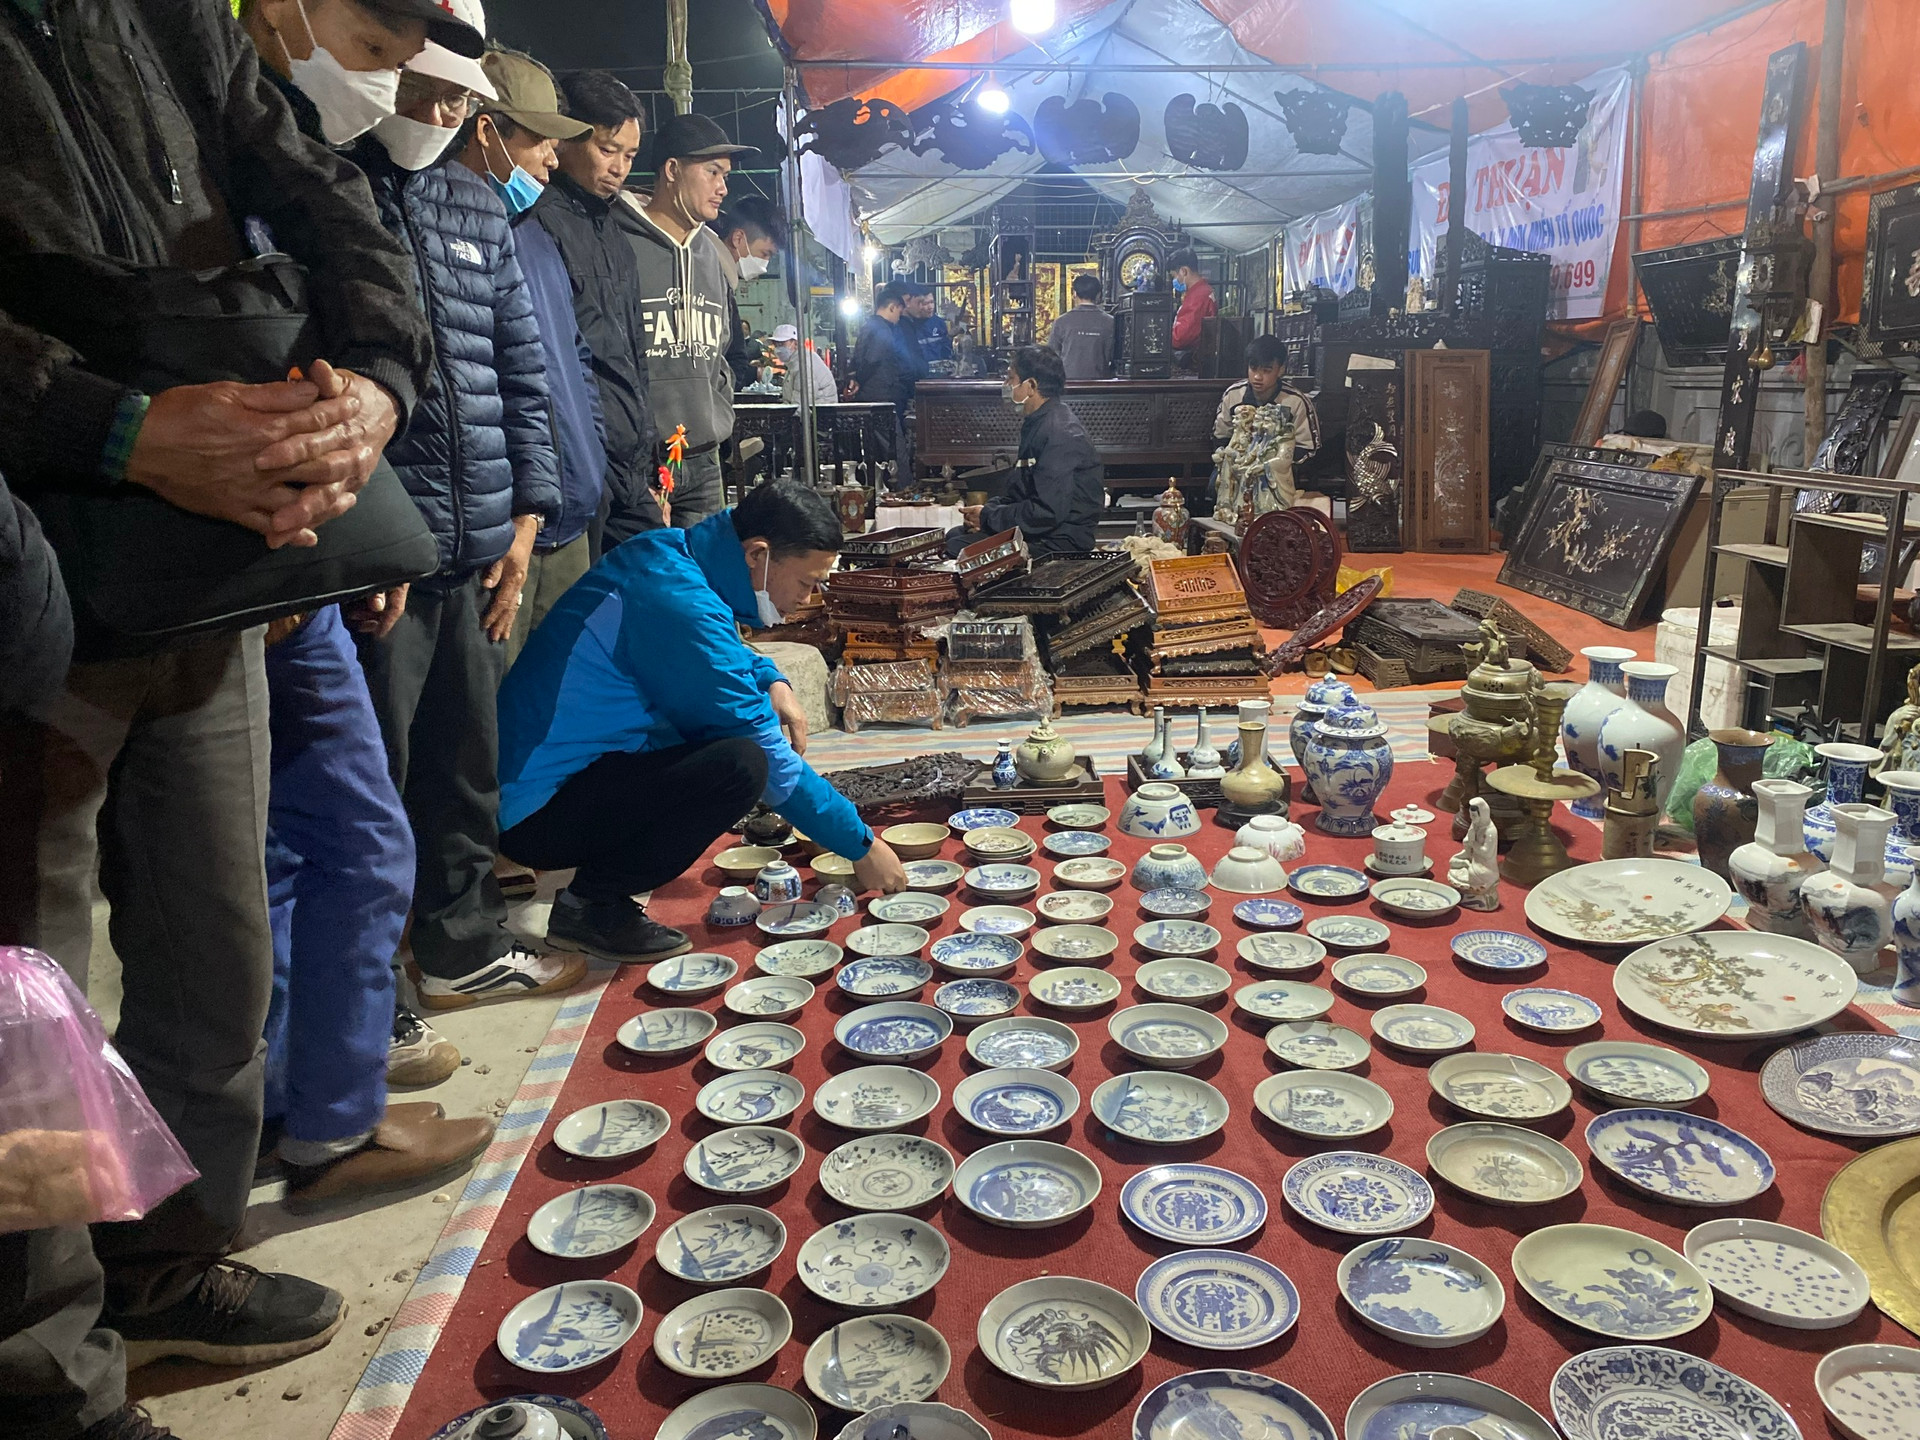 Phiên chợ cả năm chỉ họp một lần, đông nhất vào nửa đêm và rạng sáng, cách Hà Nội chưa tới 100km- Ảnh 7.